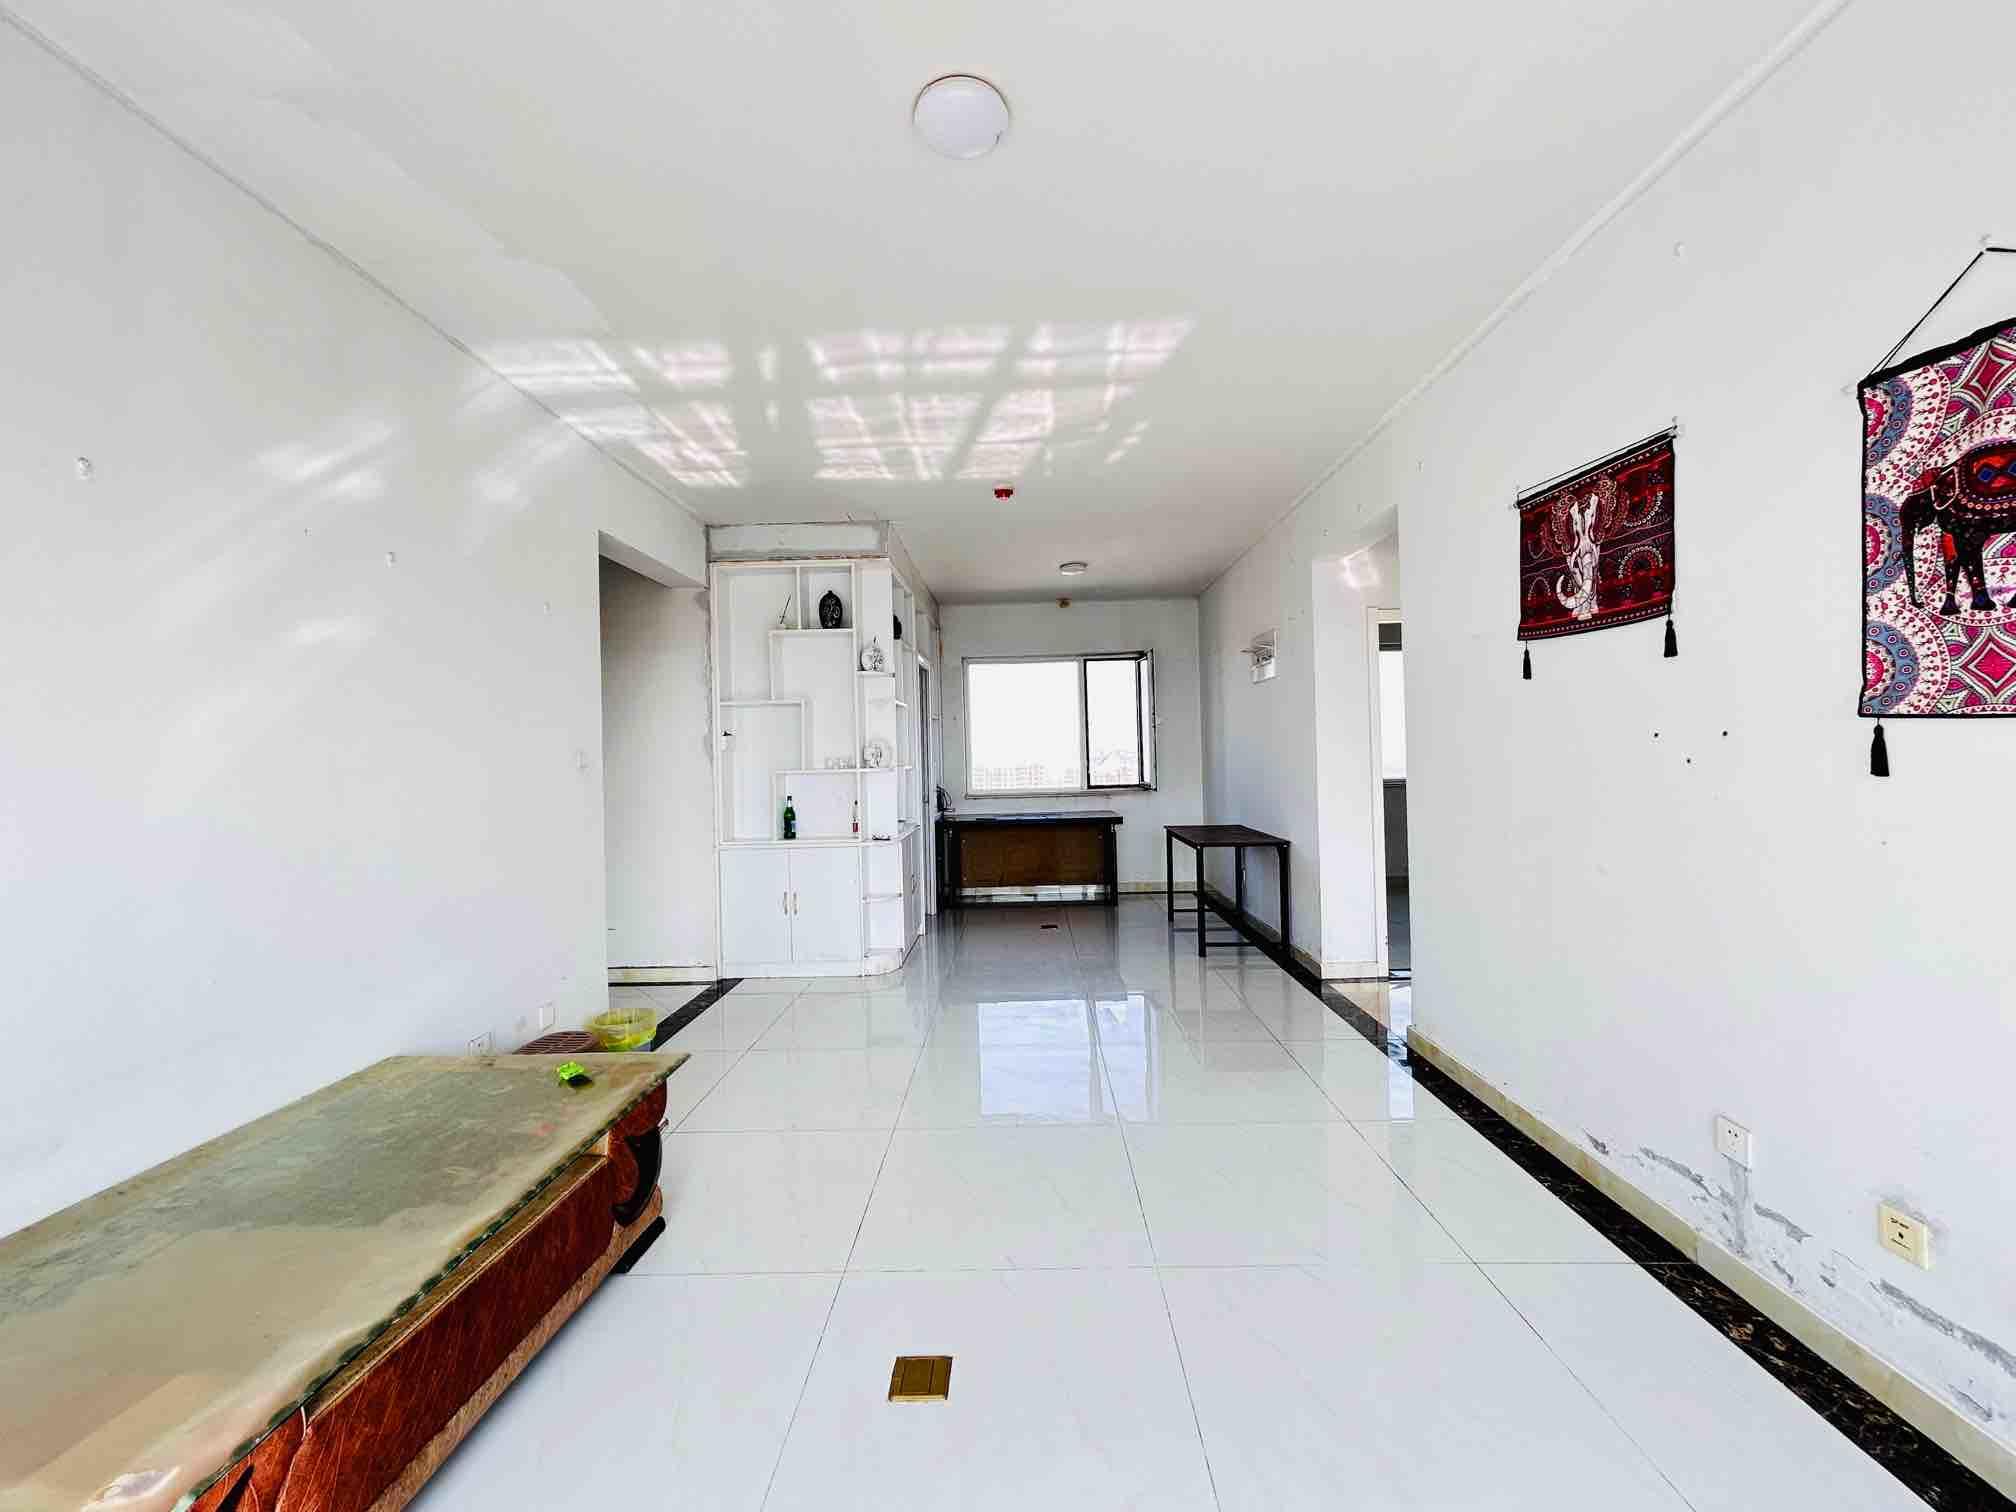 祥泰城,9,3室2厅,165万,满两年,清水,有电梯